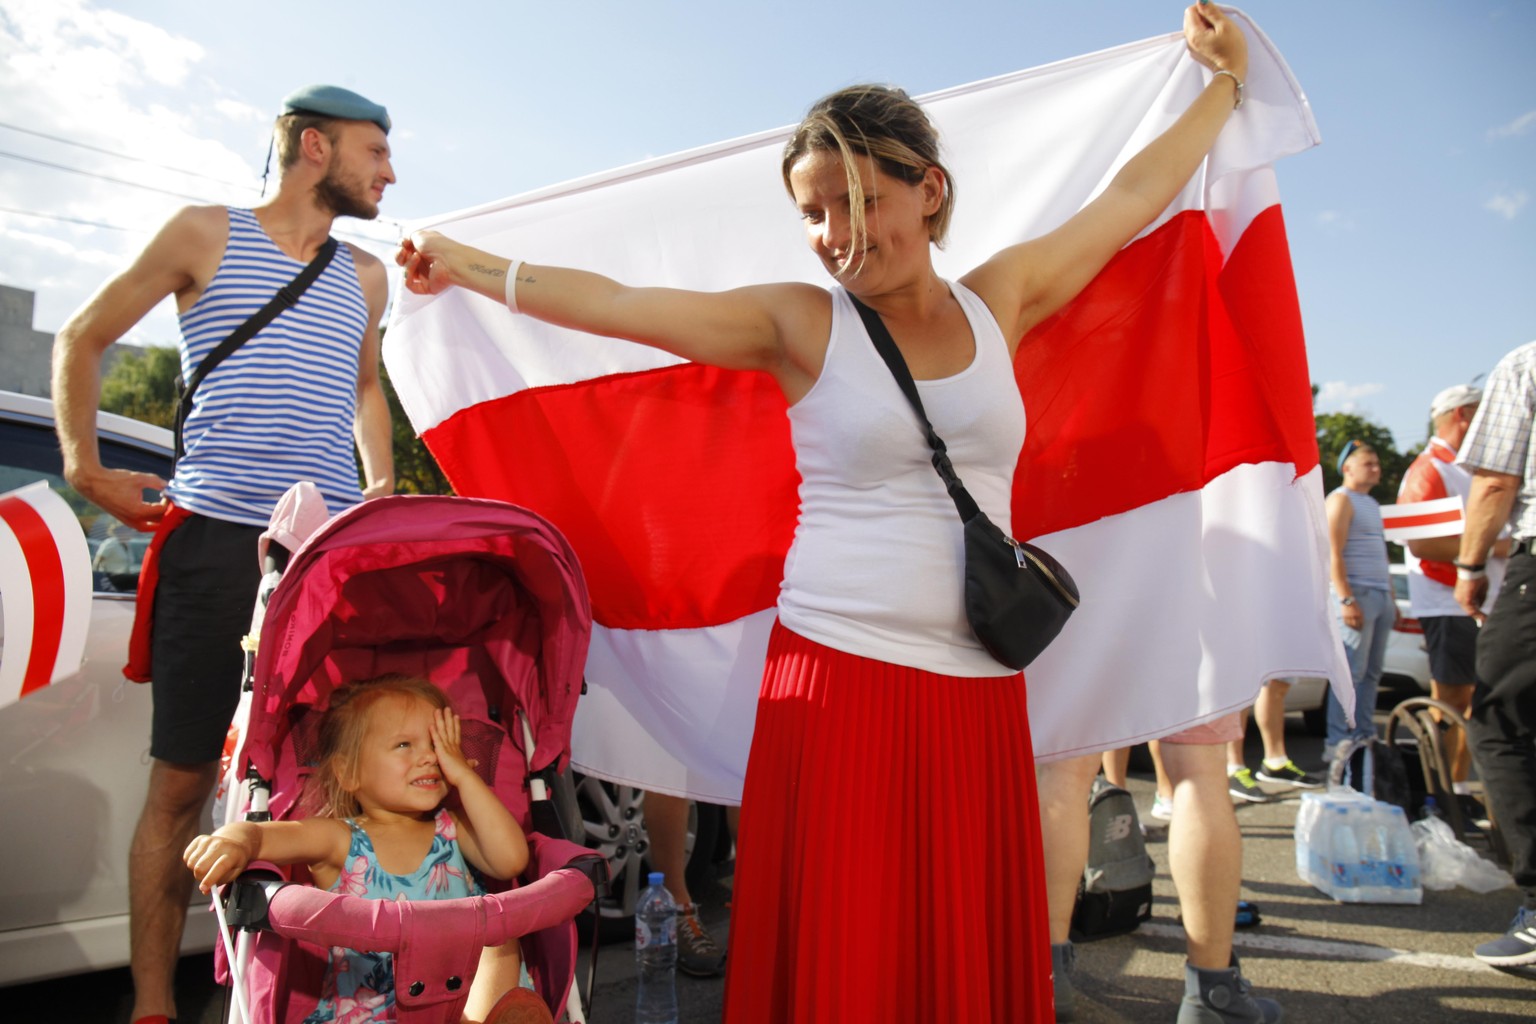 17.08.2020, Belarus, Minsk: Eine Frau hält bei einer Demonstration eine große historische Flagge von Belarus. Nach Tagen der Proteste in Belarus gegen Staatschef Lukaschenko wächst der Druck auf den M ...